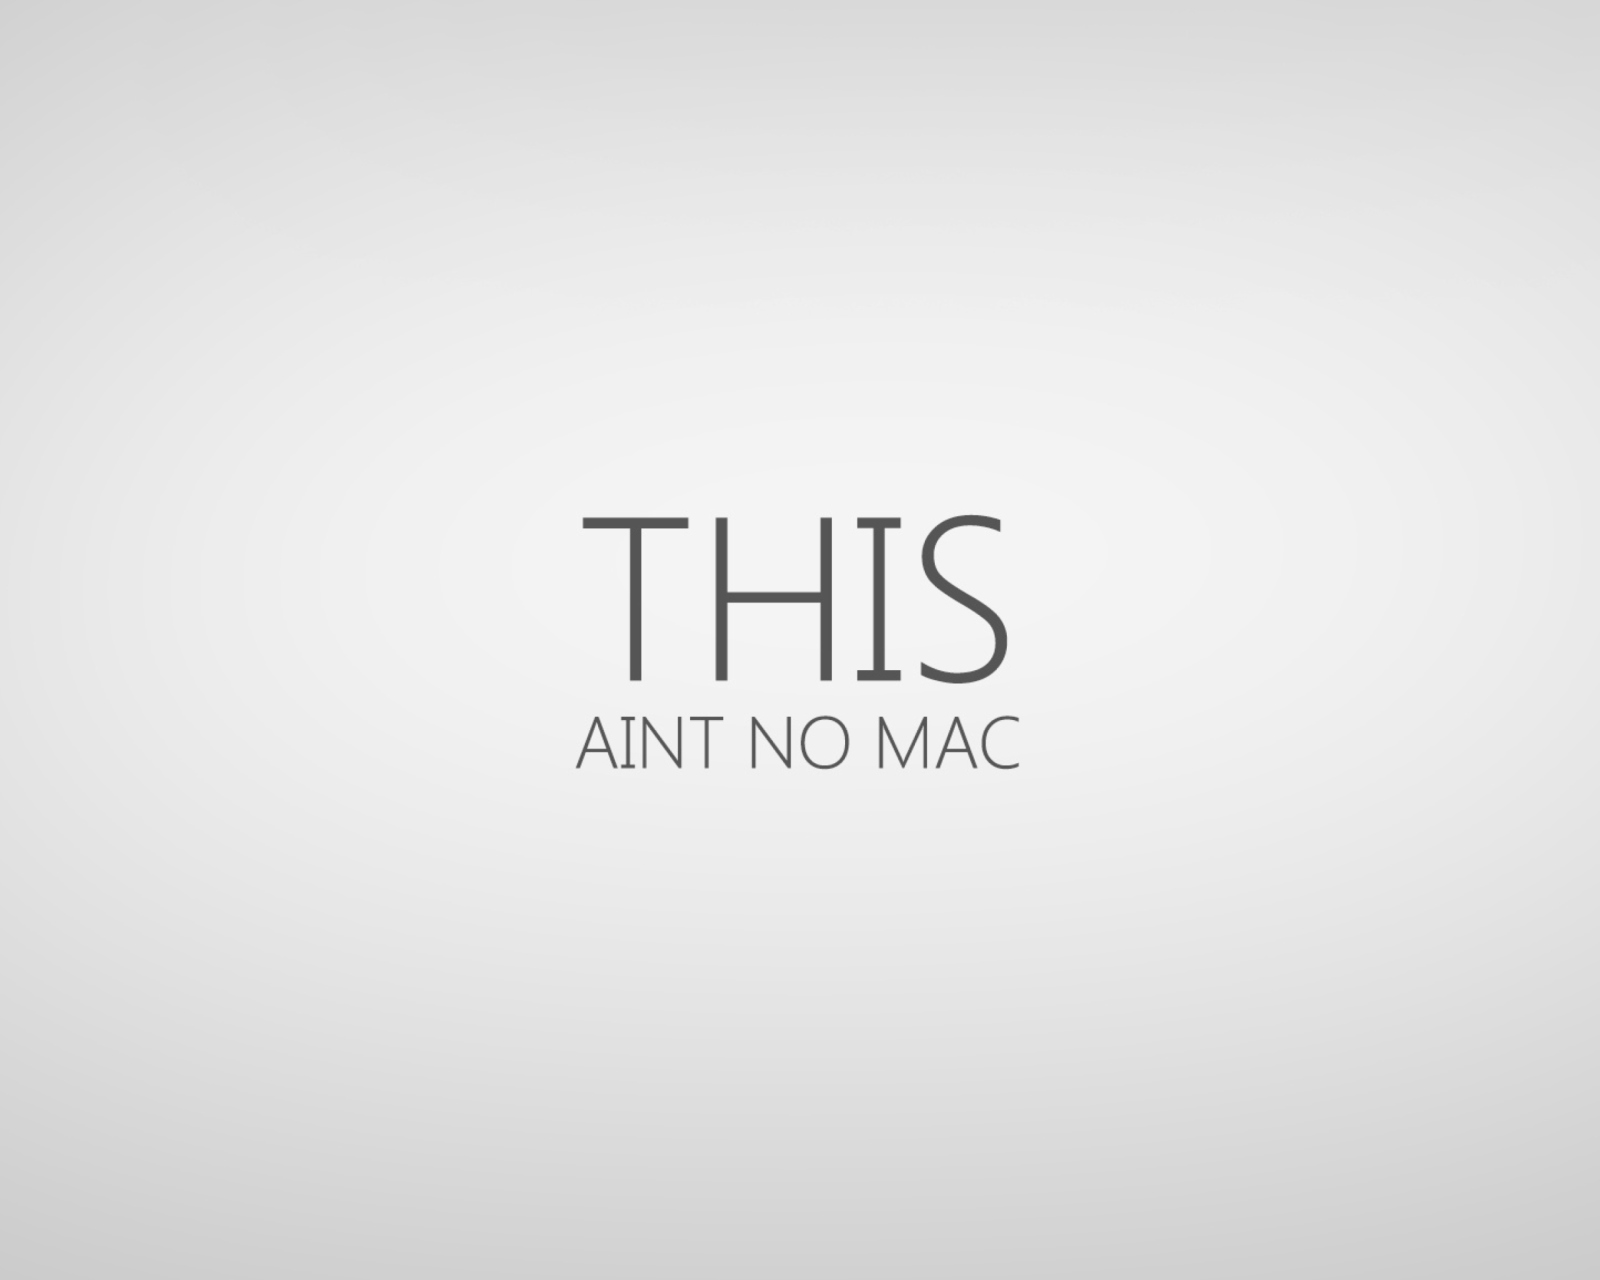 Das This Aint No Mac Wallpaper 1600x1280